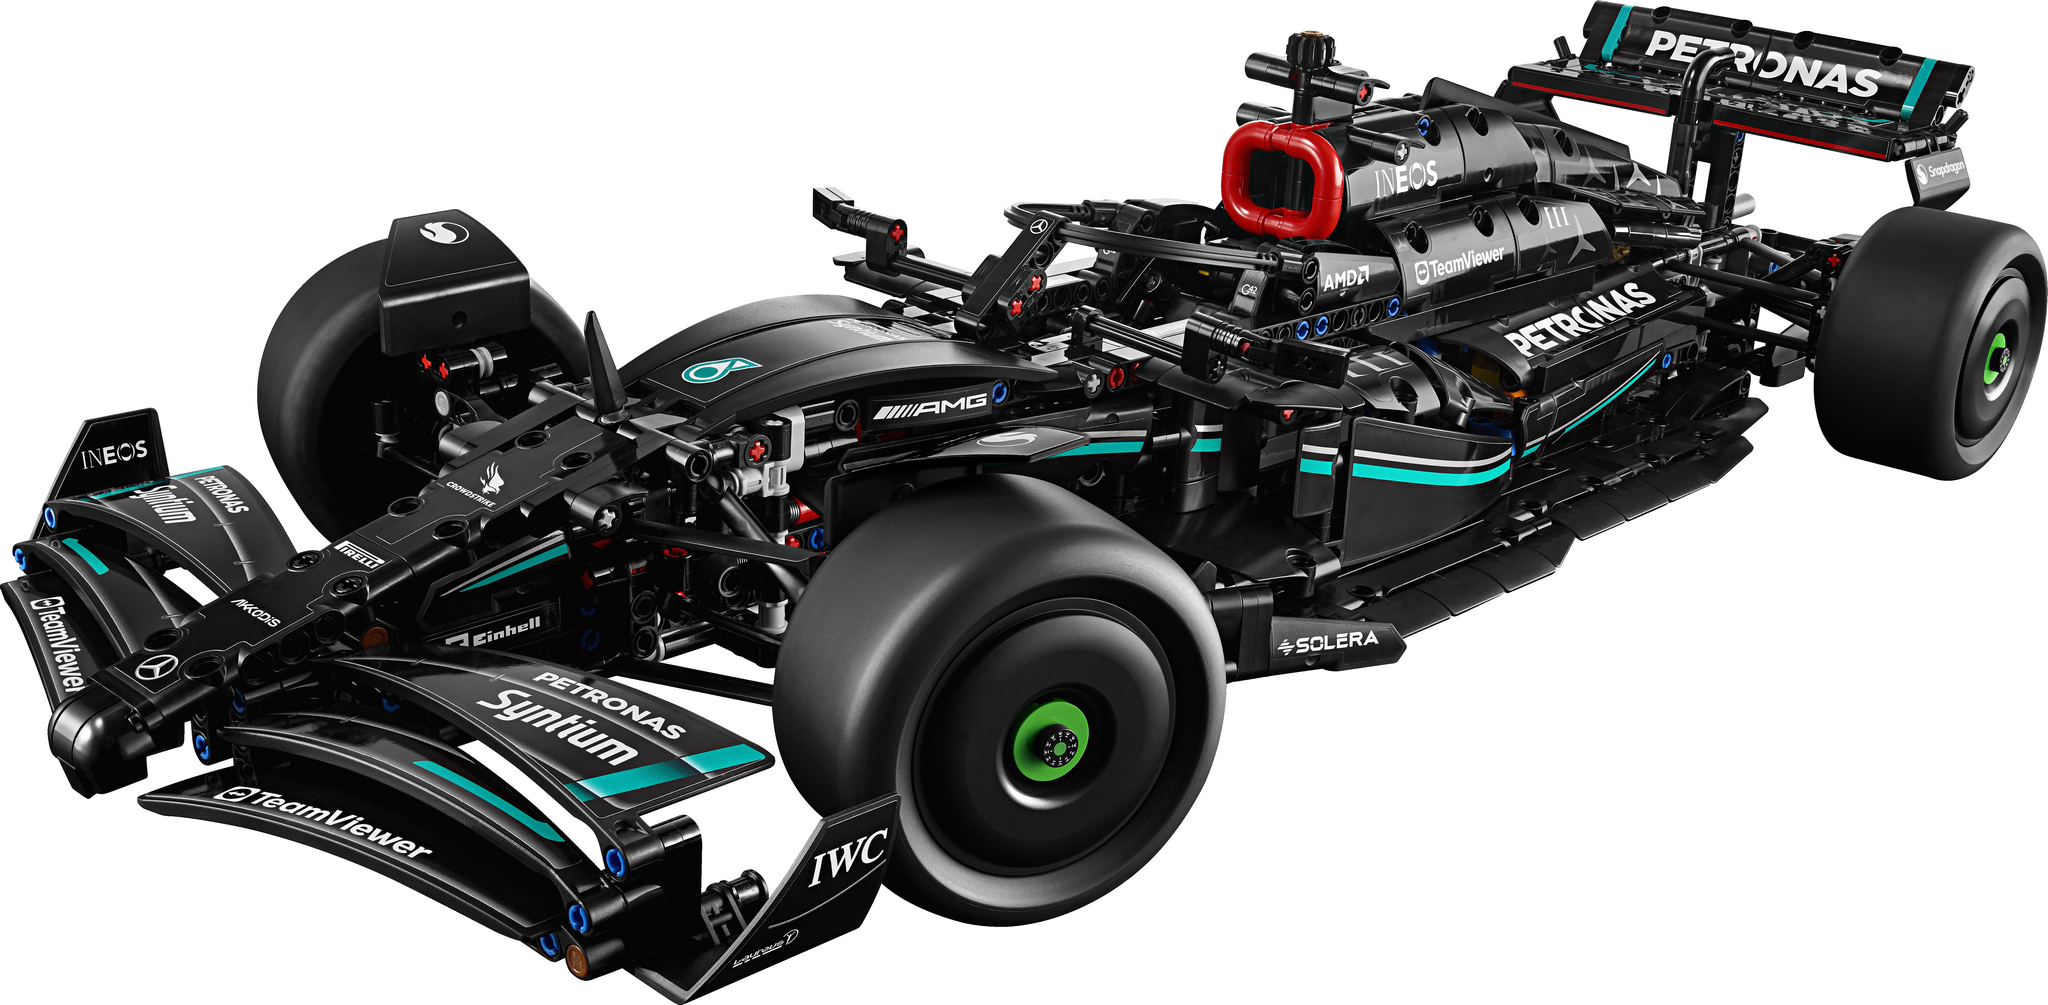 LEGO bringt Technik-Modell des AMG F1 W14